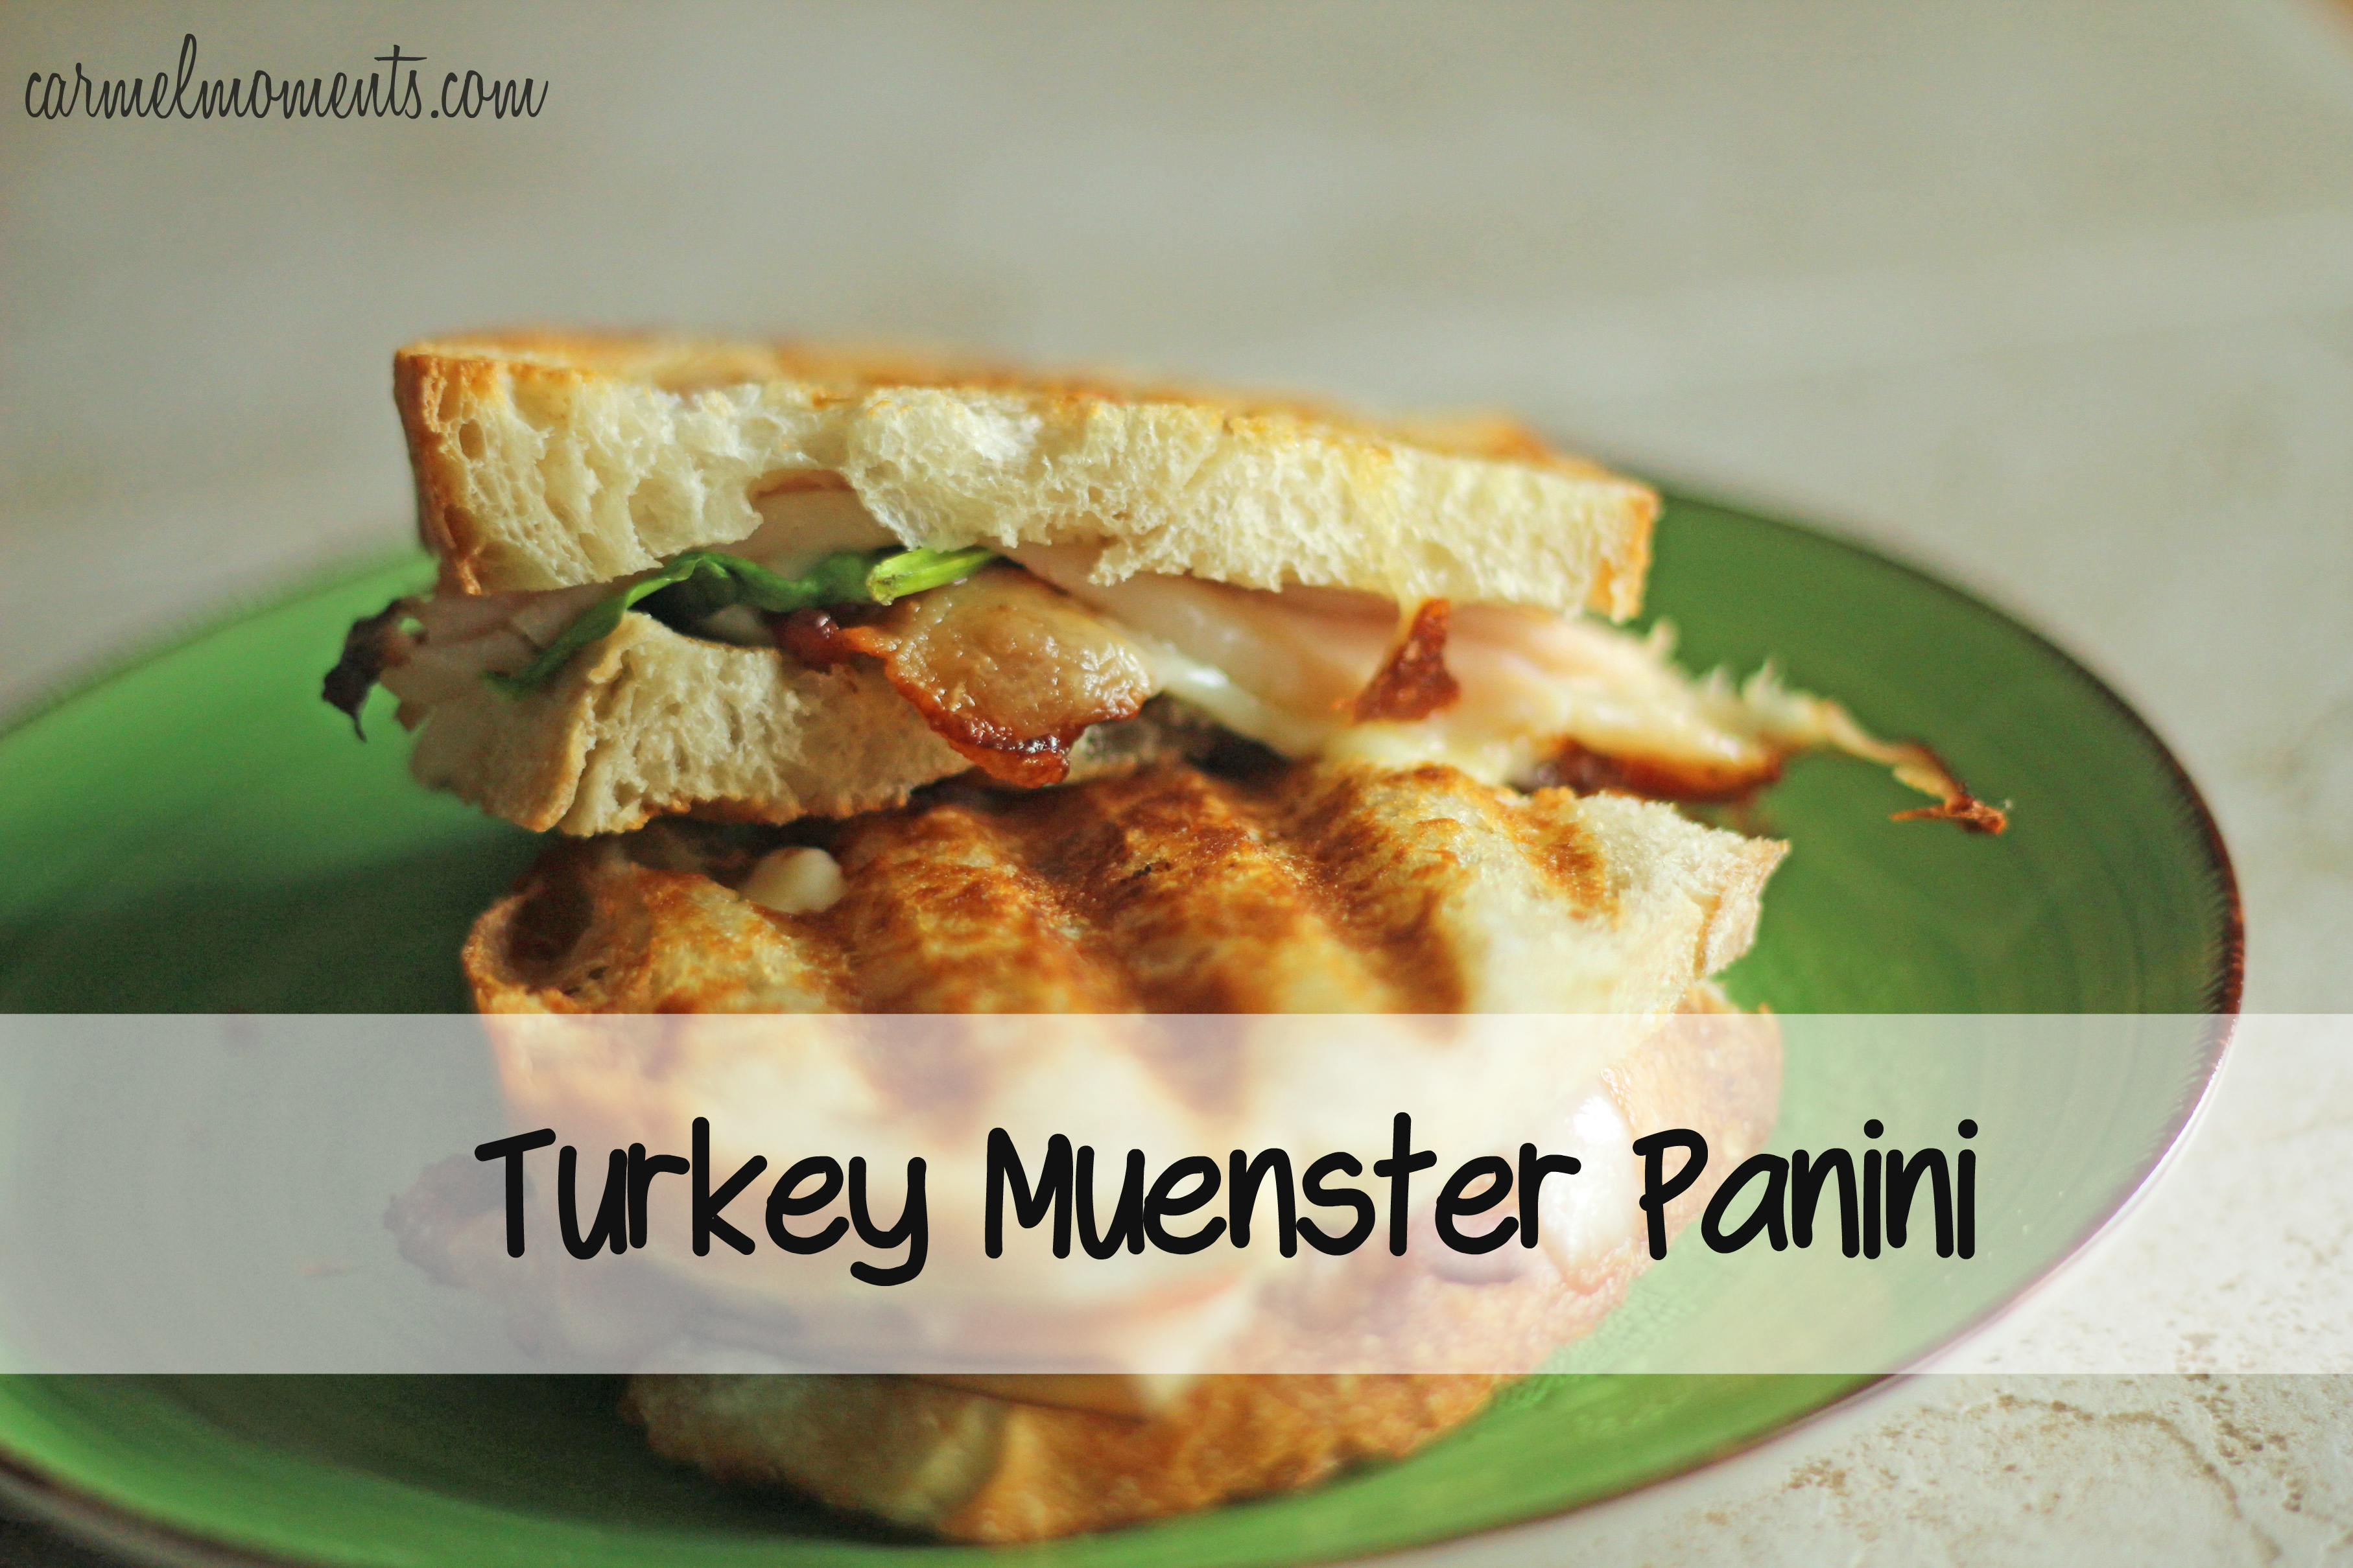 Turkey & Muenster Panini